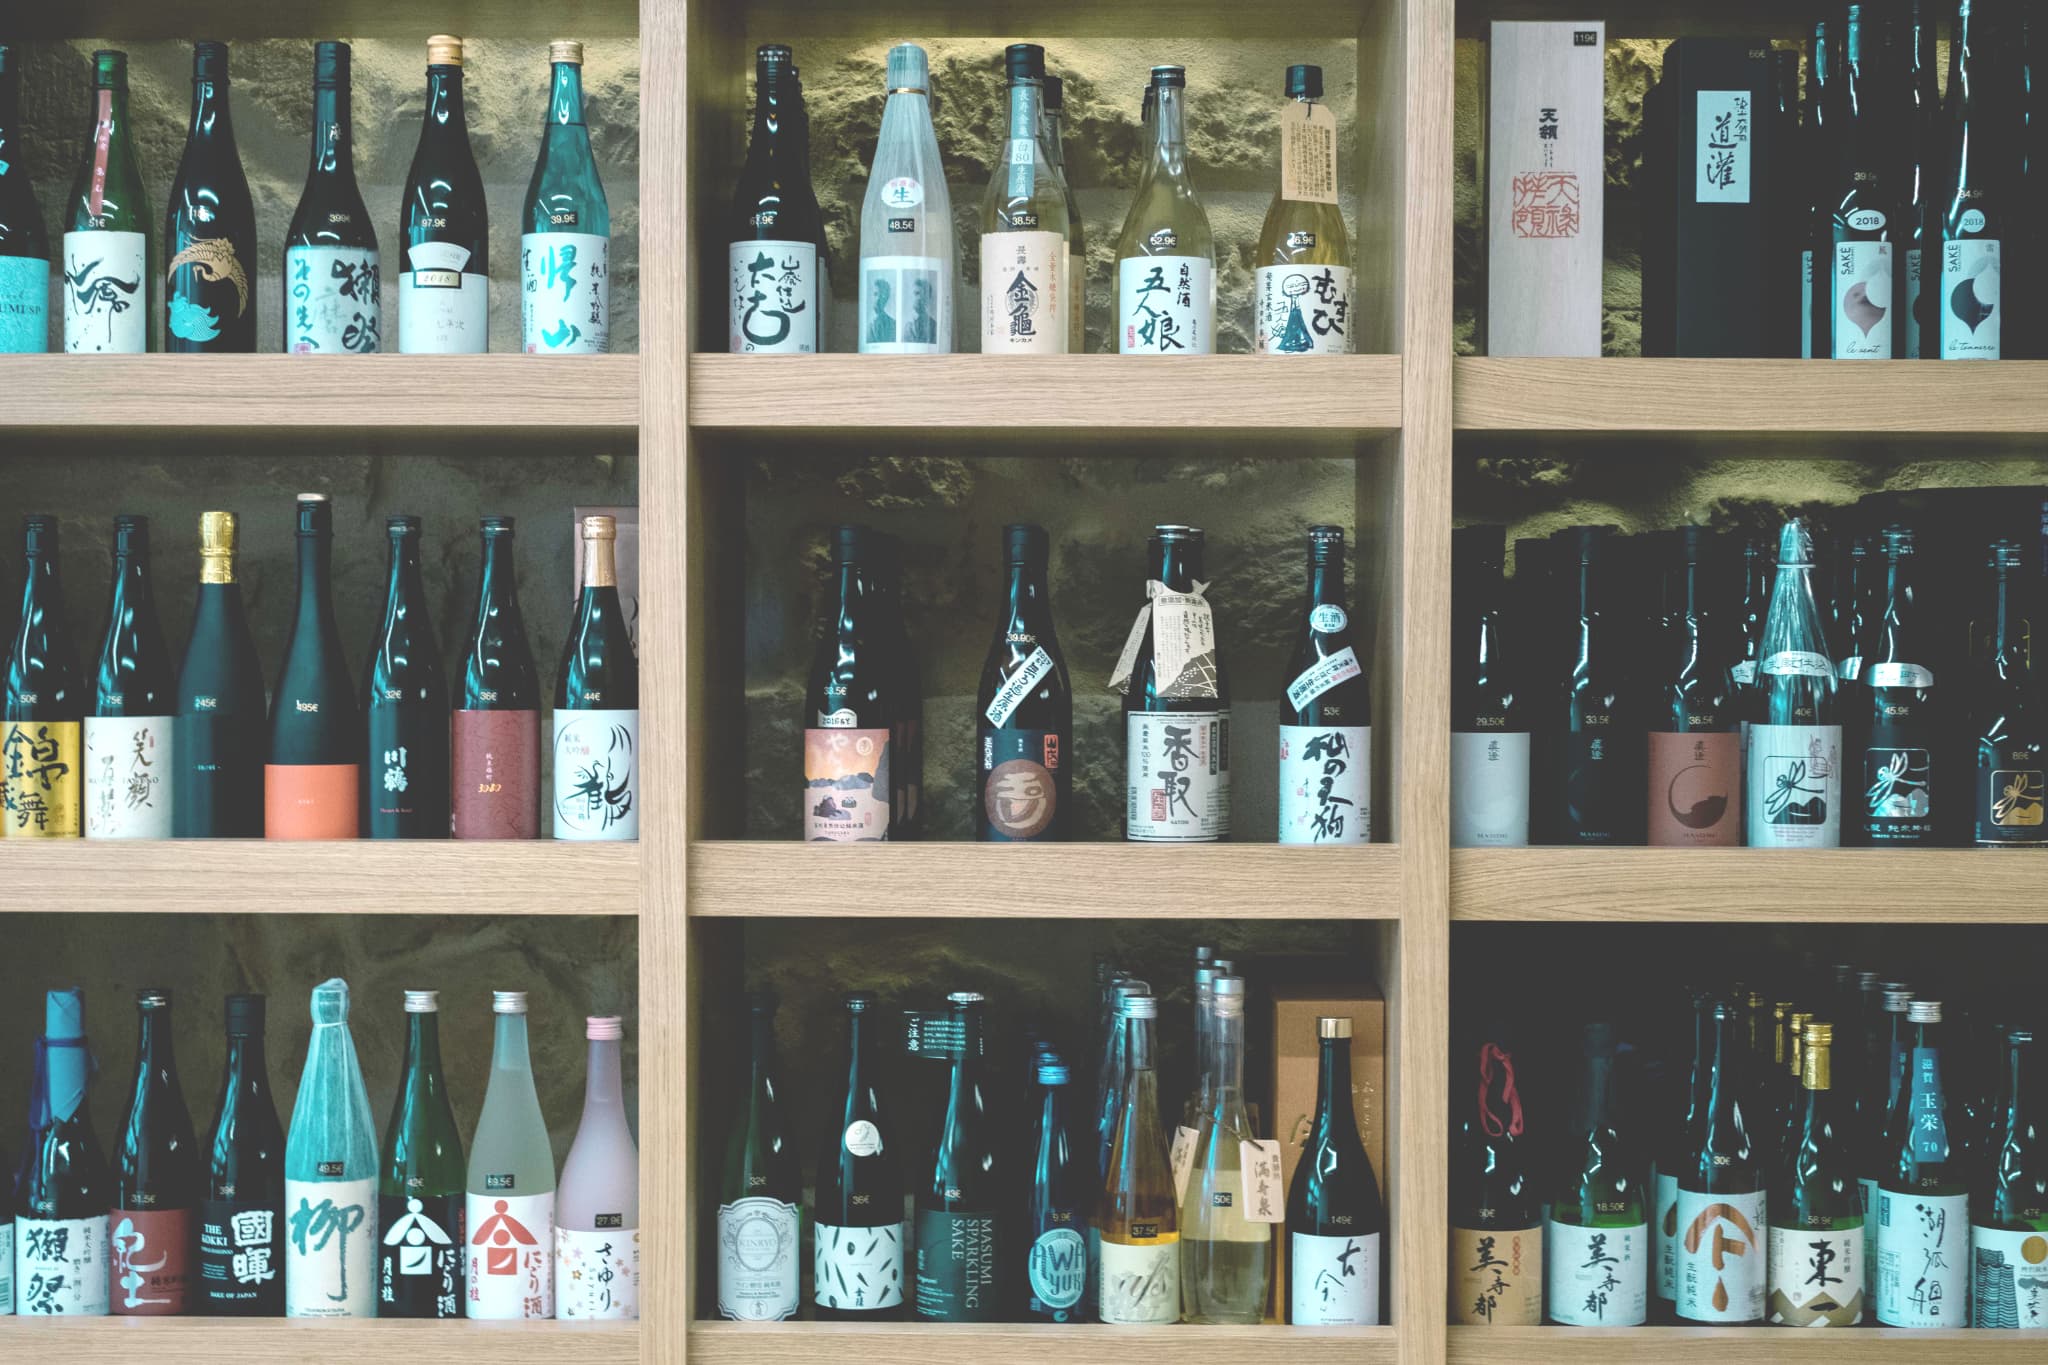 Scenery of a liquor store in Nagano Prefecture